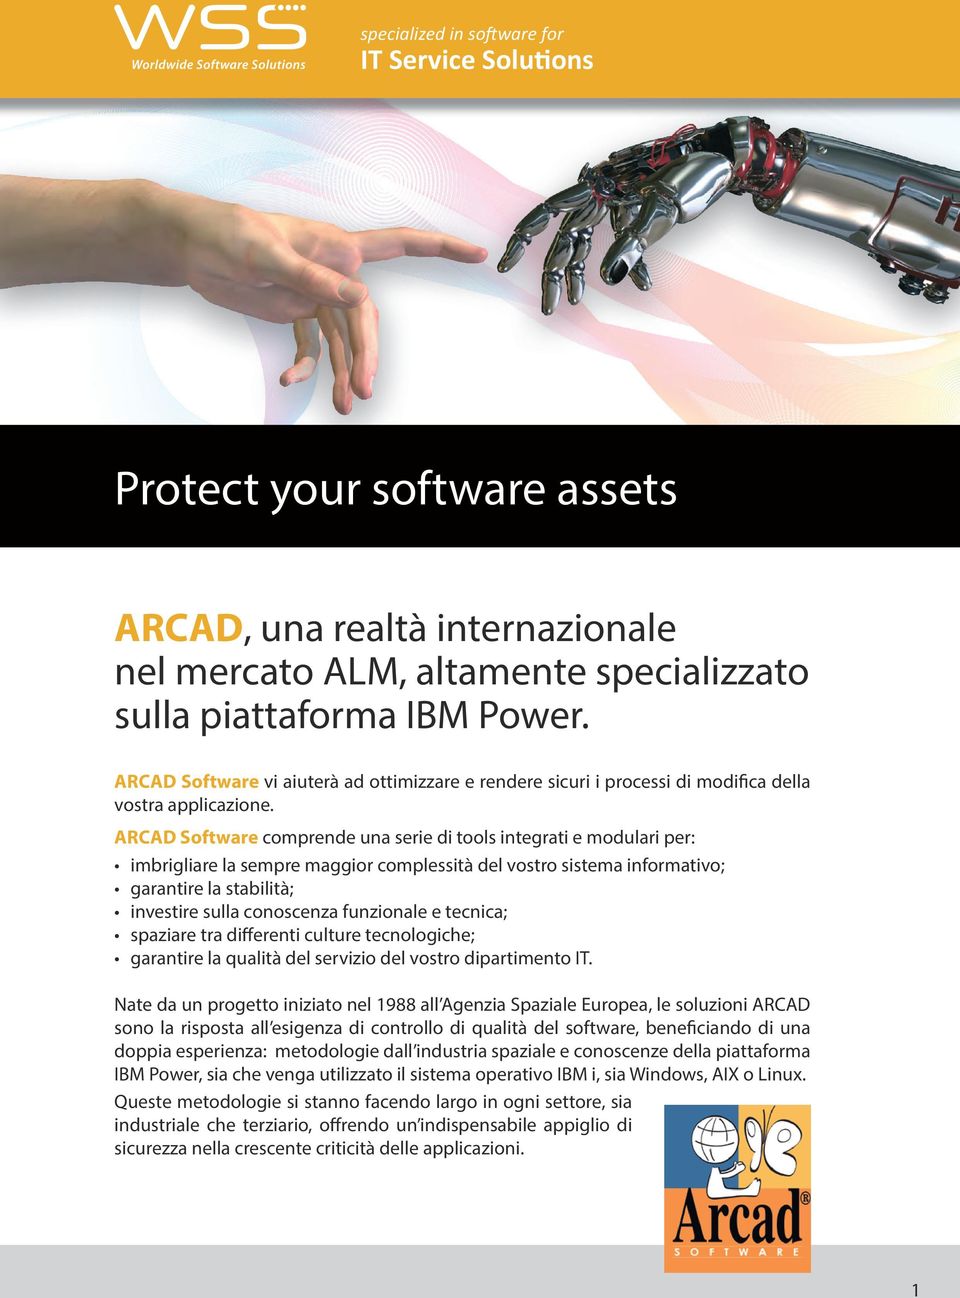 ARCAD Software comprende una serie di tools integrati e modulari per: imbrigliare la sempre maggior complessità del vostro sistema informativo; garantire la stabilità; investire sulla conoscenza